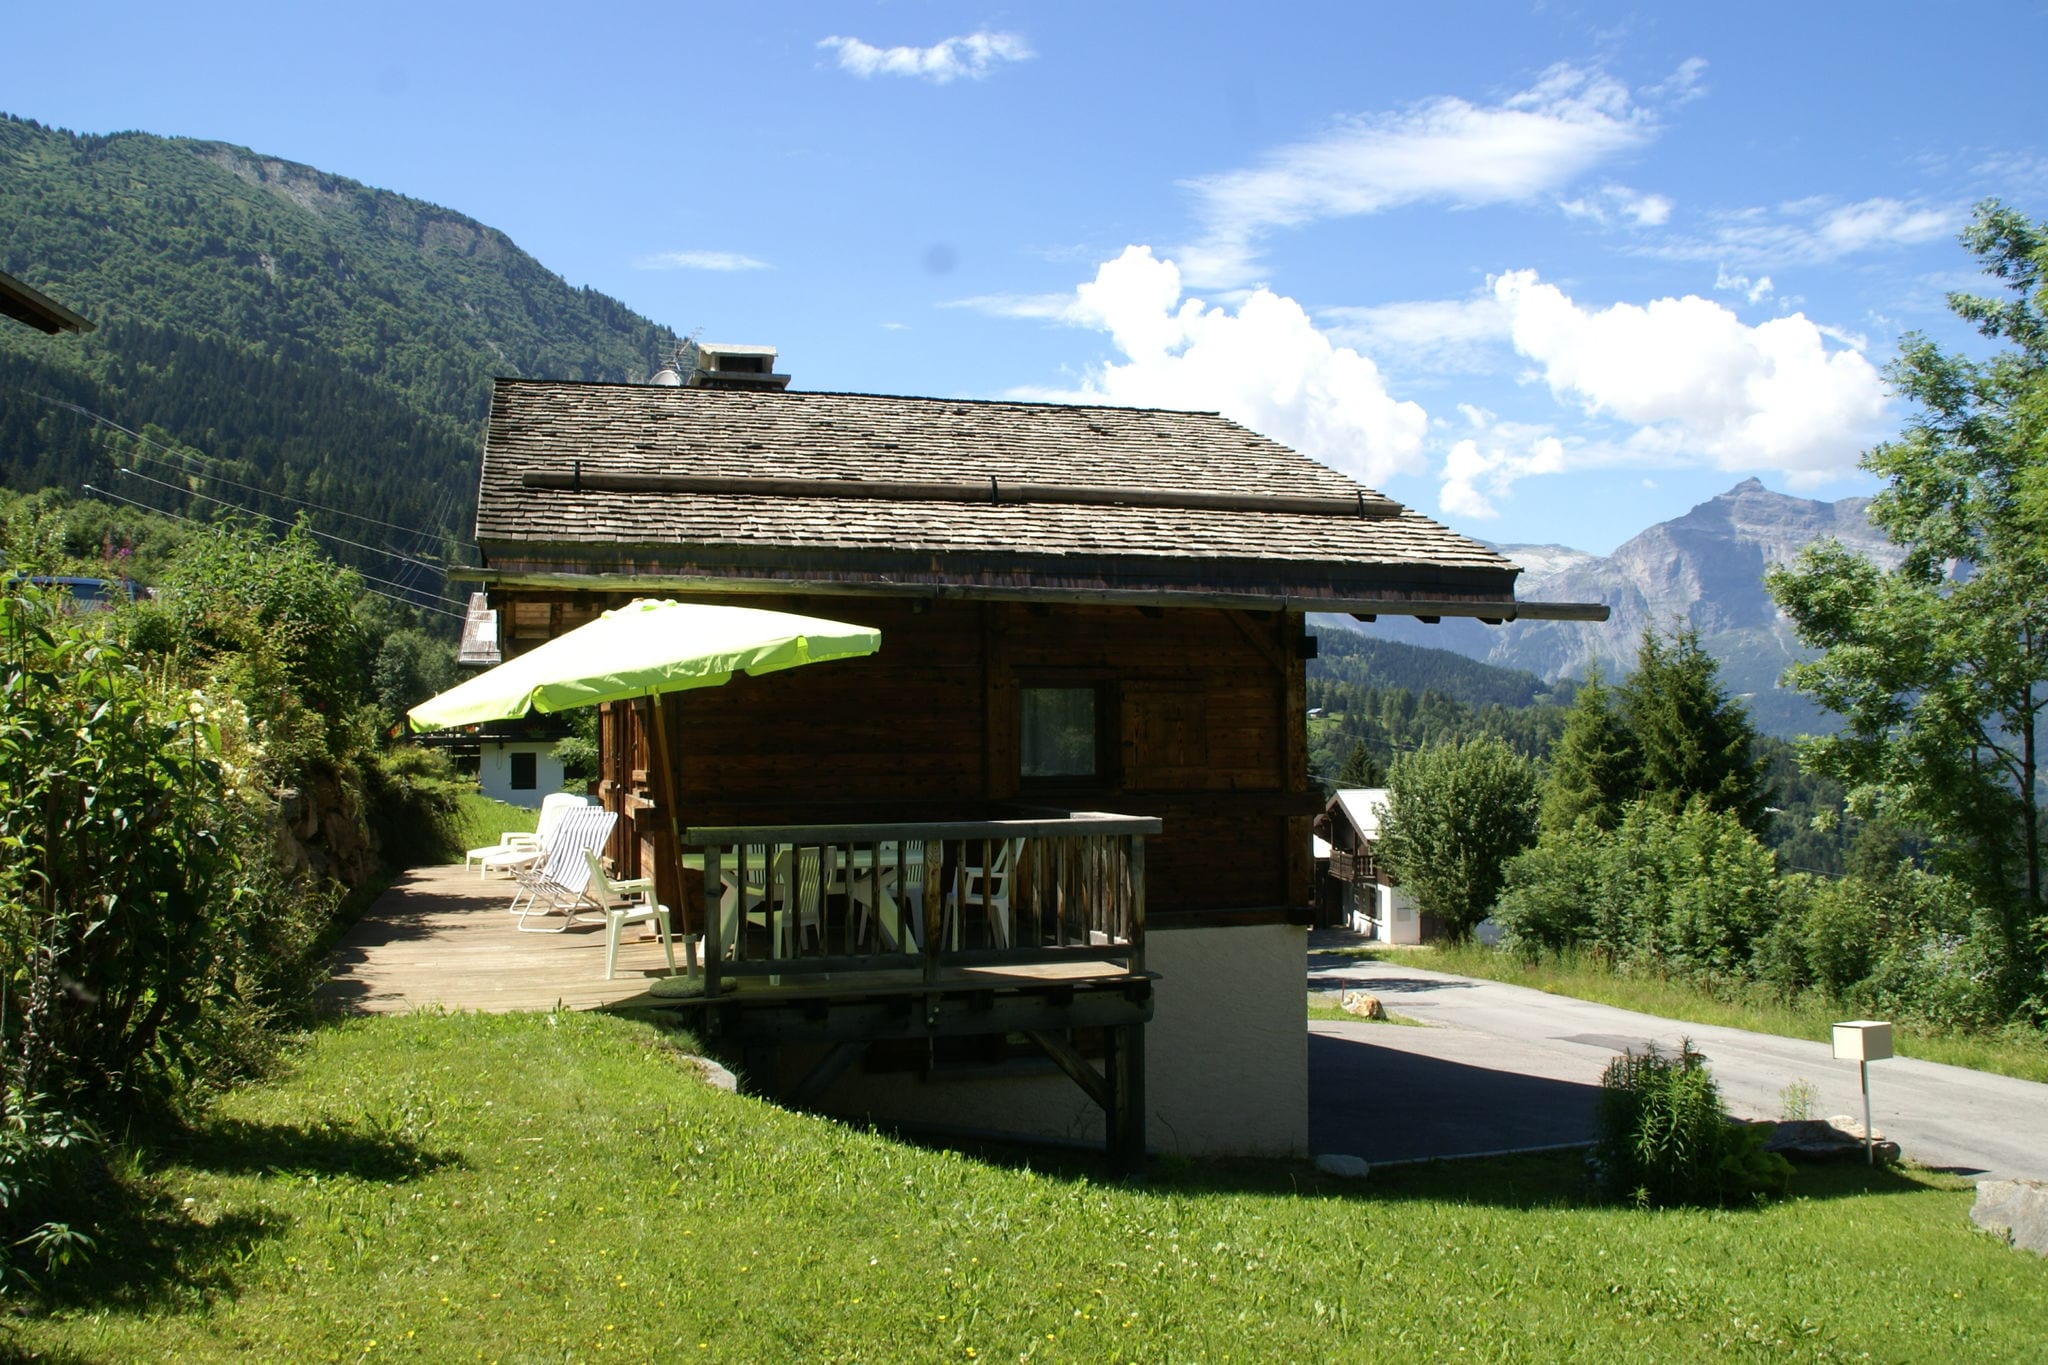 Vredig chalet in de Rhone, Alpen, in de Chamonix vallei